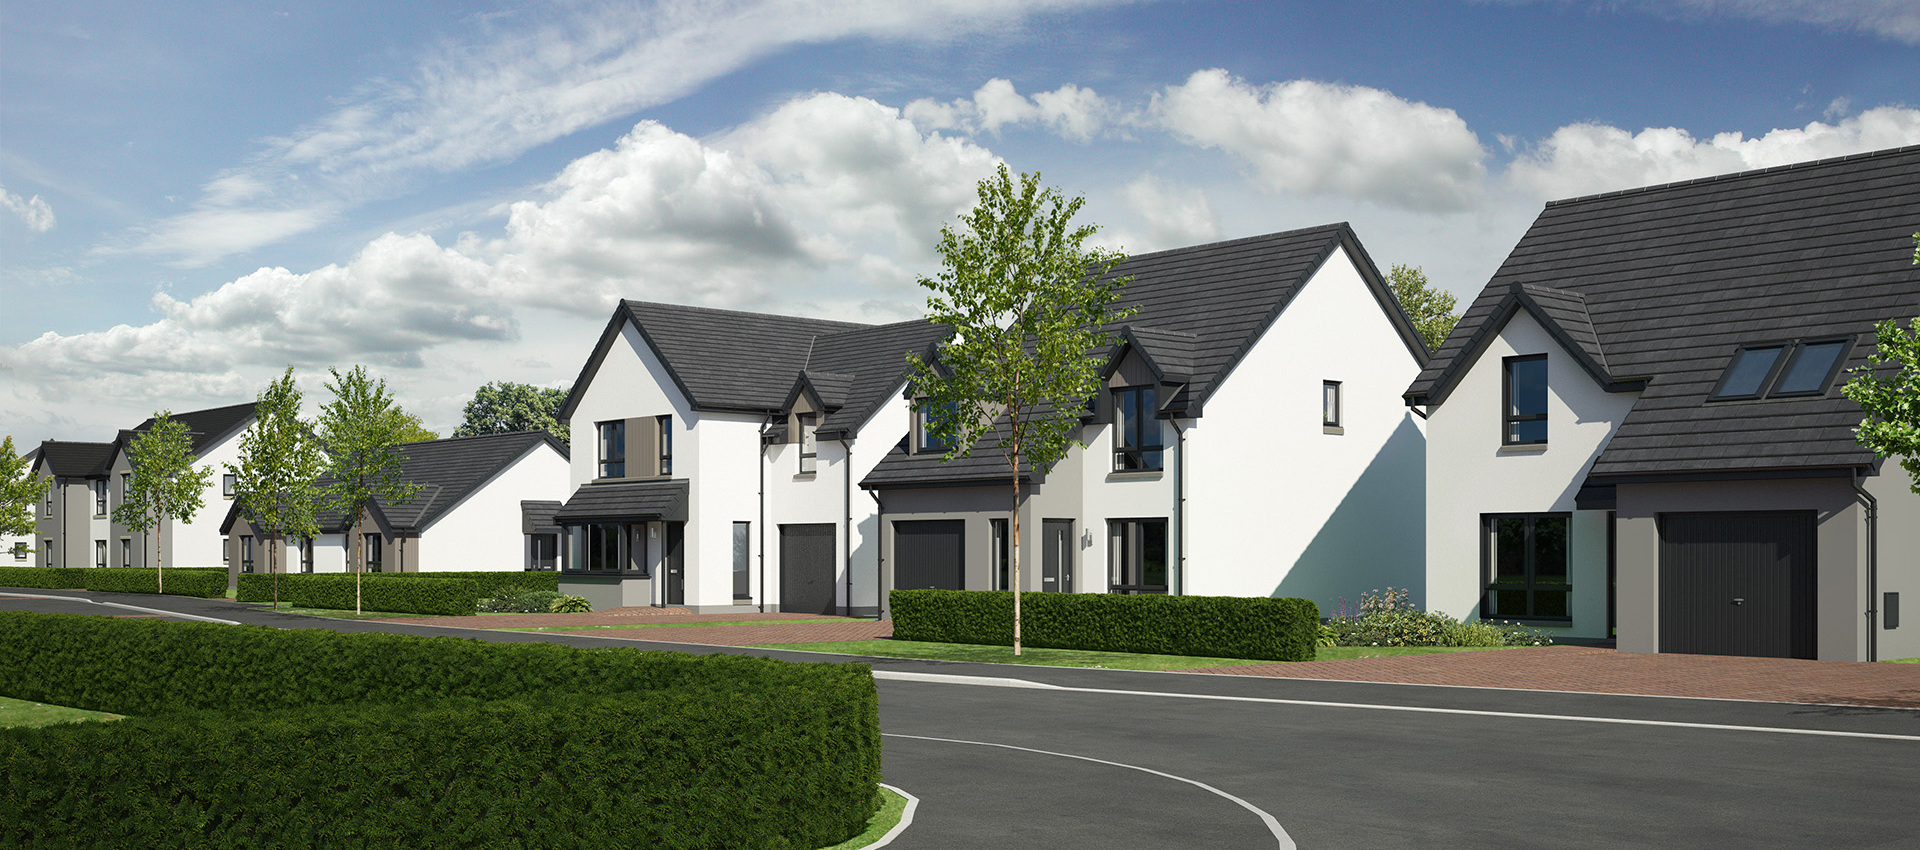 Springfield Properties New Homes In Scotland - Drumnadrochit - Drumnadrochit